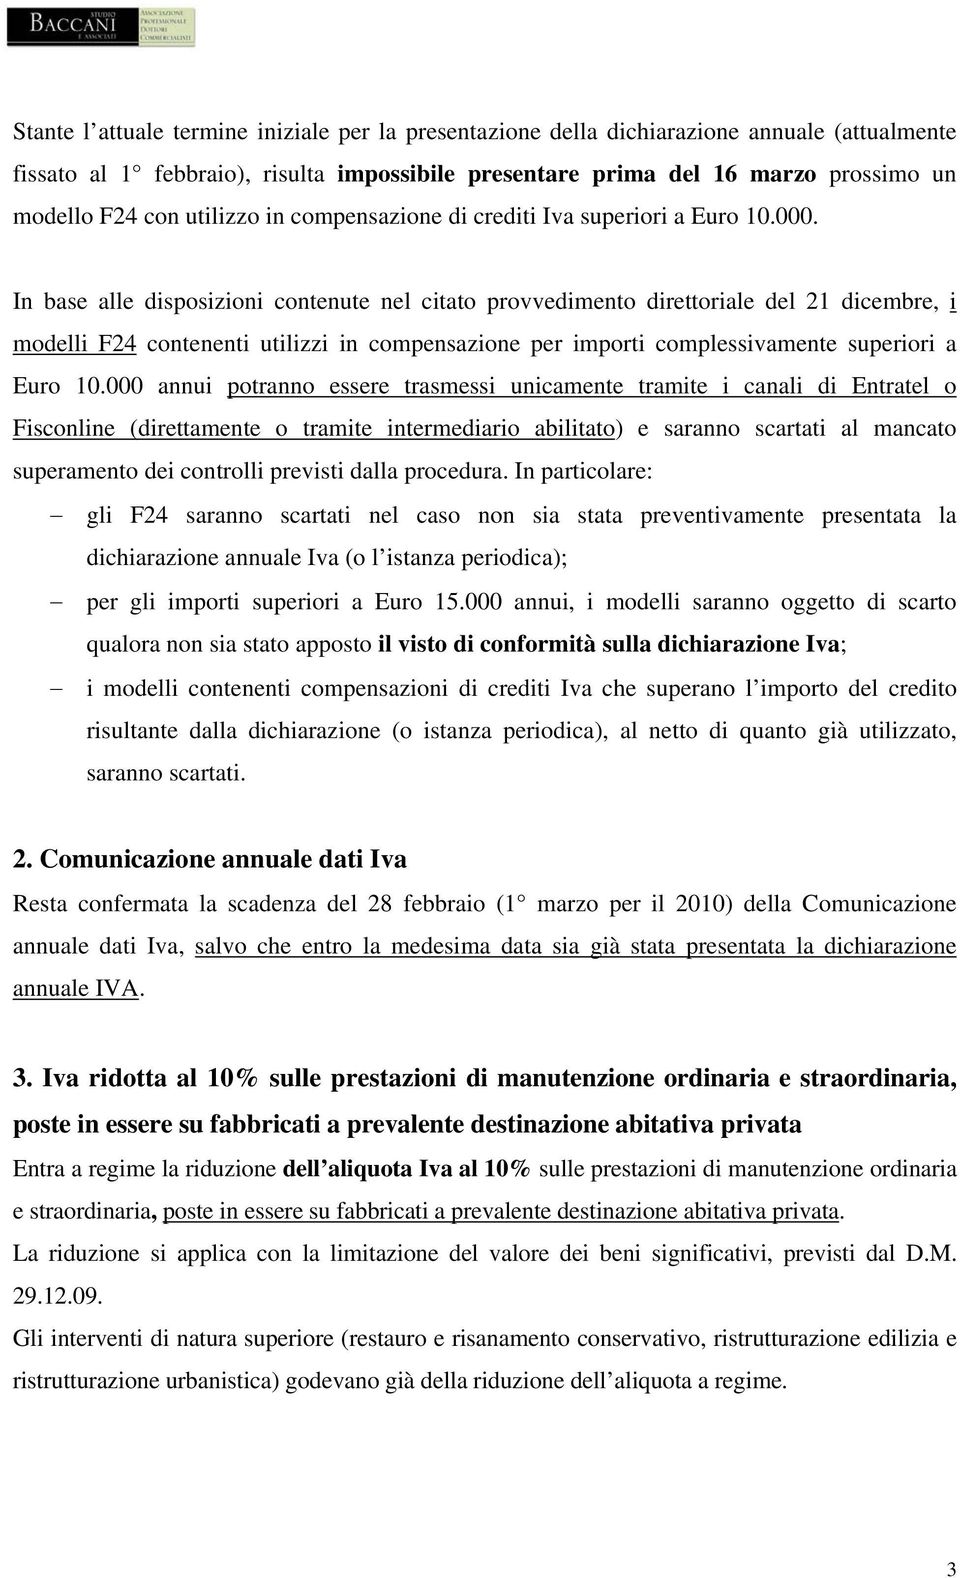 In base alle disposizioni contenute nel citato provvedimento direttoriale del 21 dicembre, i modelli F24 contenenti utilizzi in compensazione per importi complessivamente superiori a Euro 10.